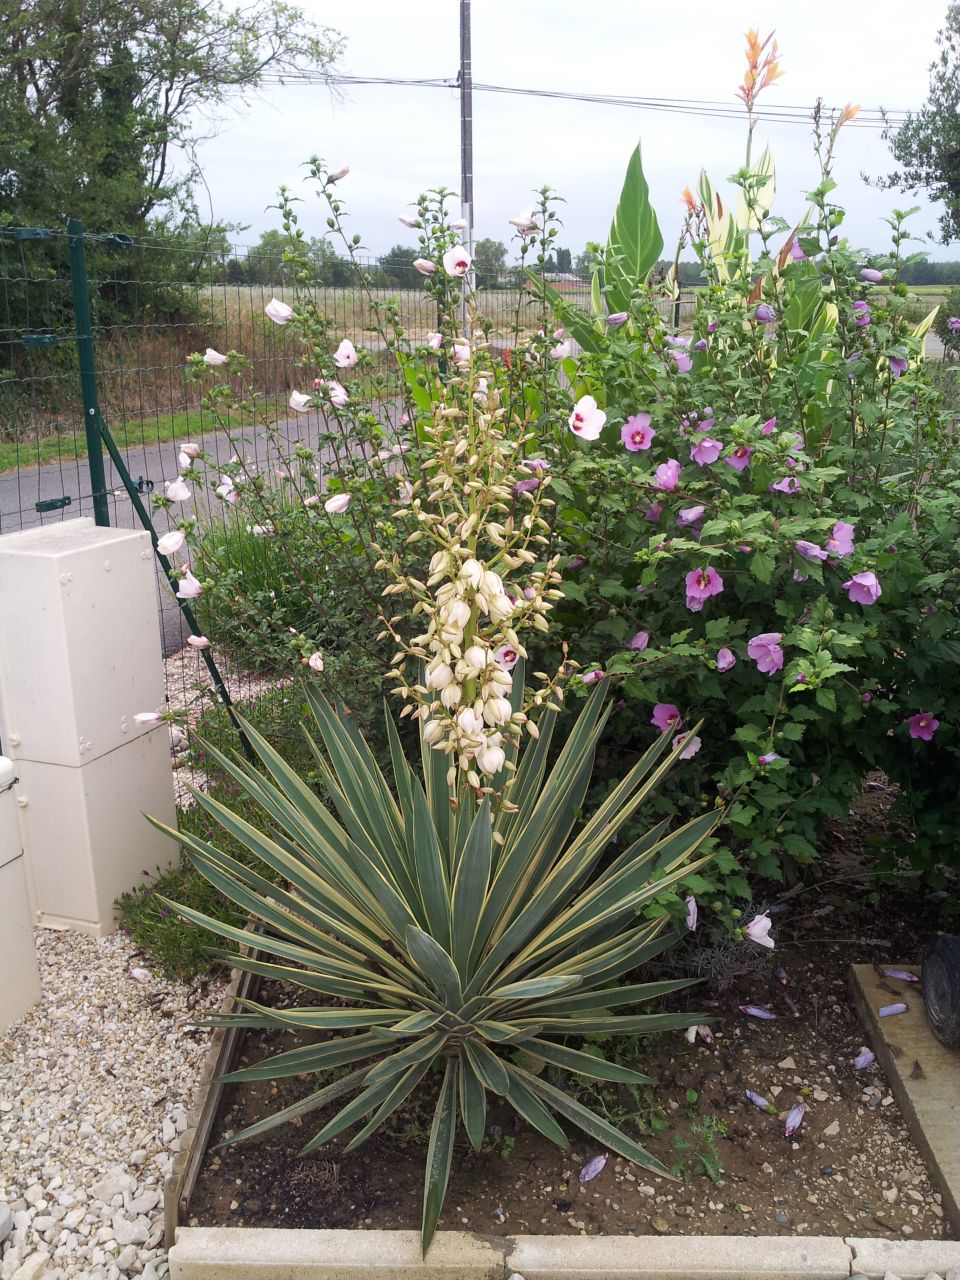 Et voici notre yucca 15 mois plus tard. Une surprise nous attendait en rentrant de vacances. Une magnifique hampe florale.